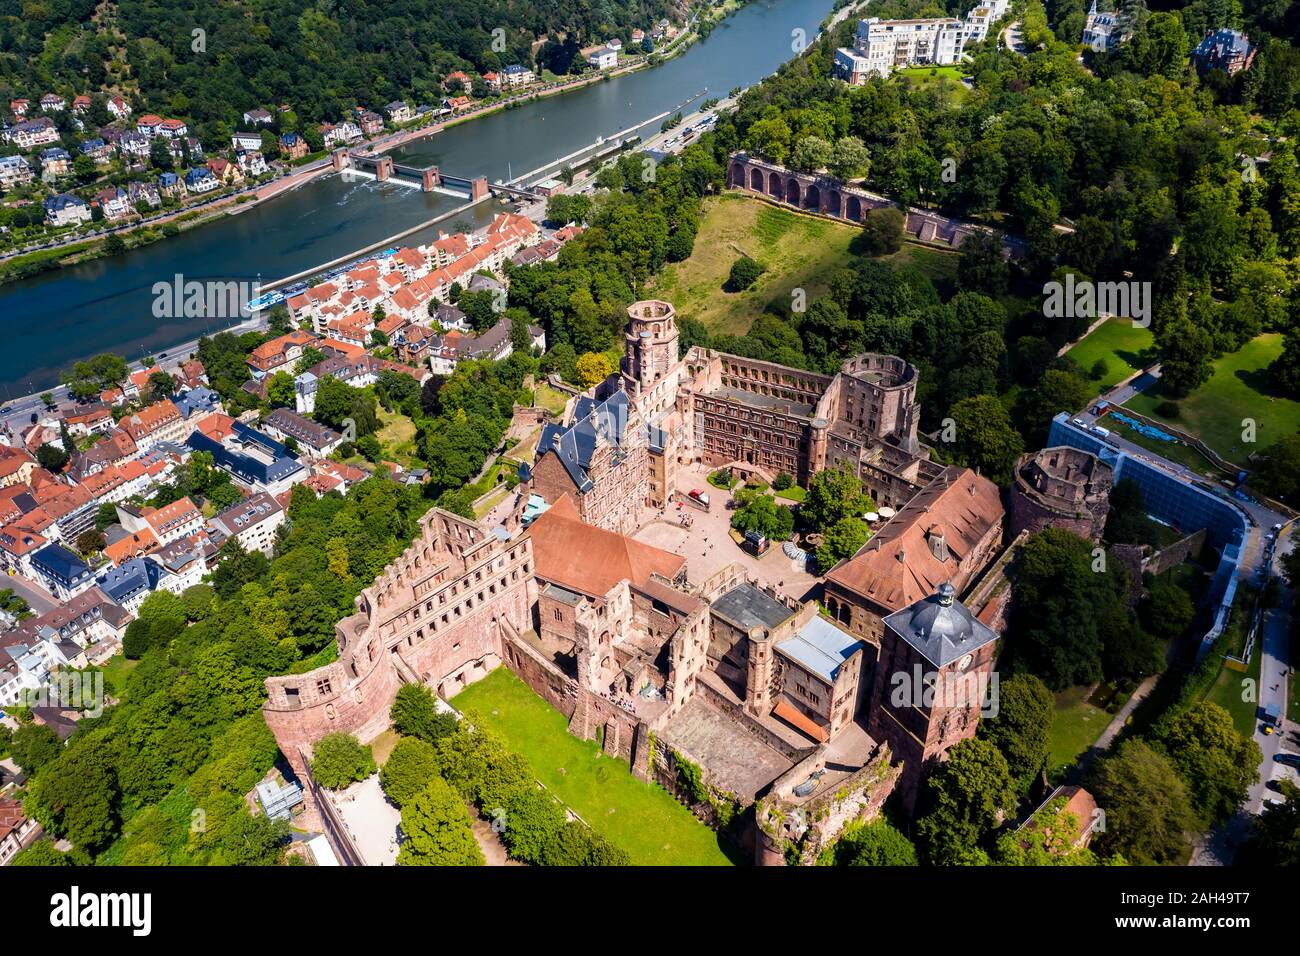 Alemania, Baden-Wurttemberg, vista aérea de la ciudad de Heidelberg con el castillo y el río Neckar Foto de stock